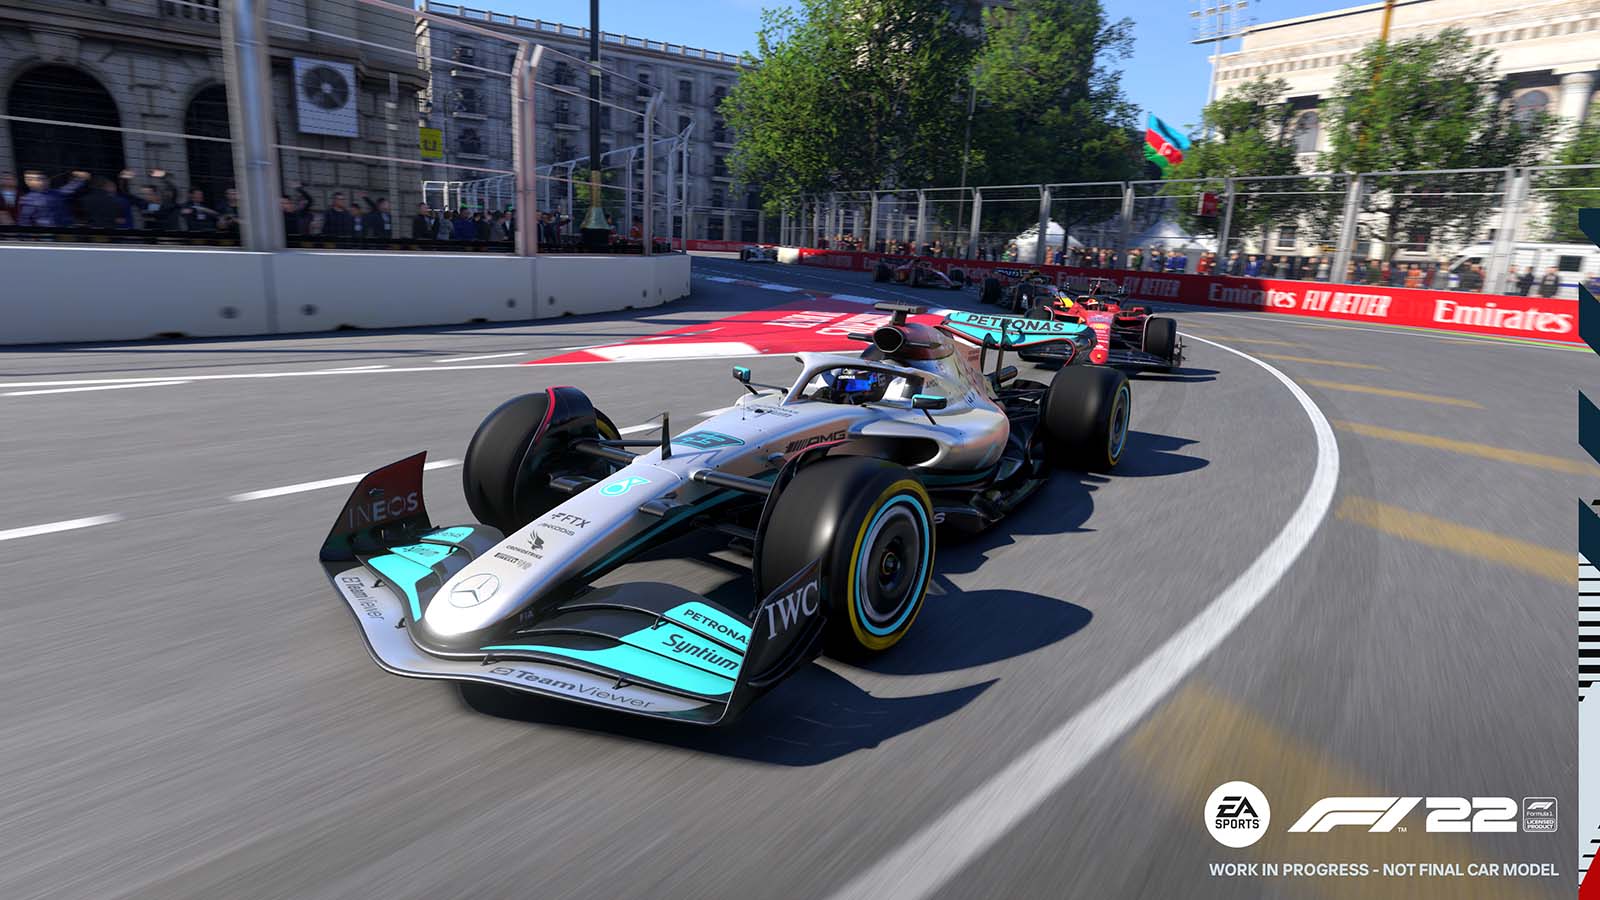 F1 2022 graphic from the Azerbaijan Grand Prix